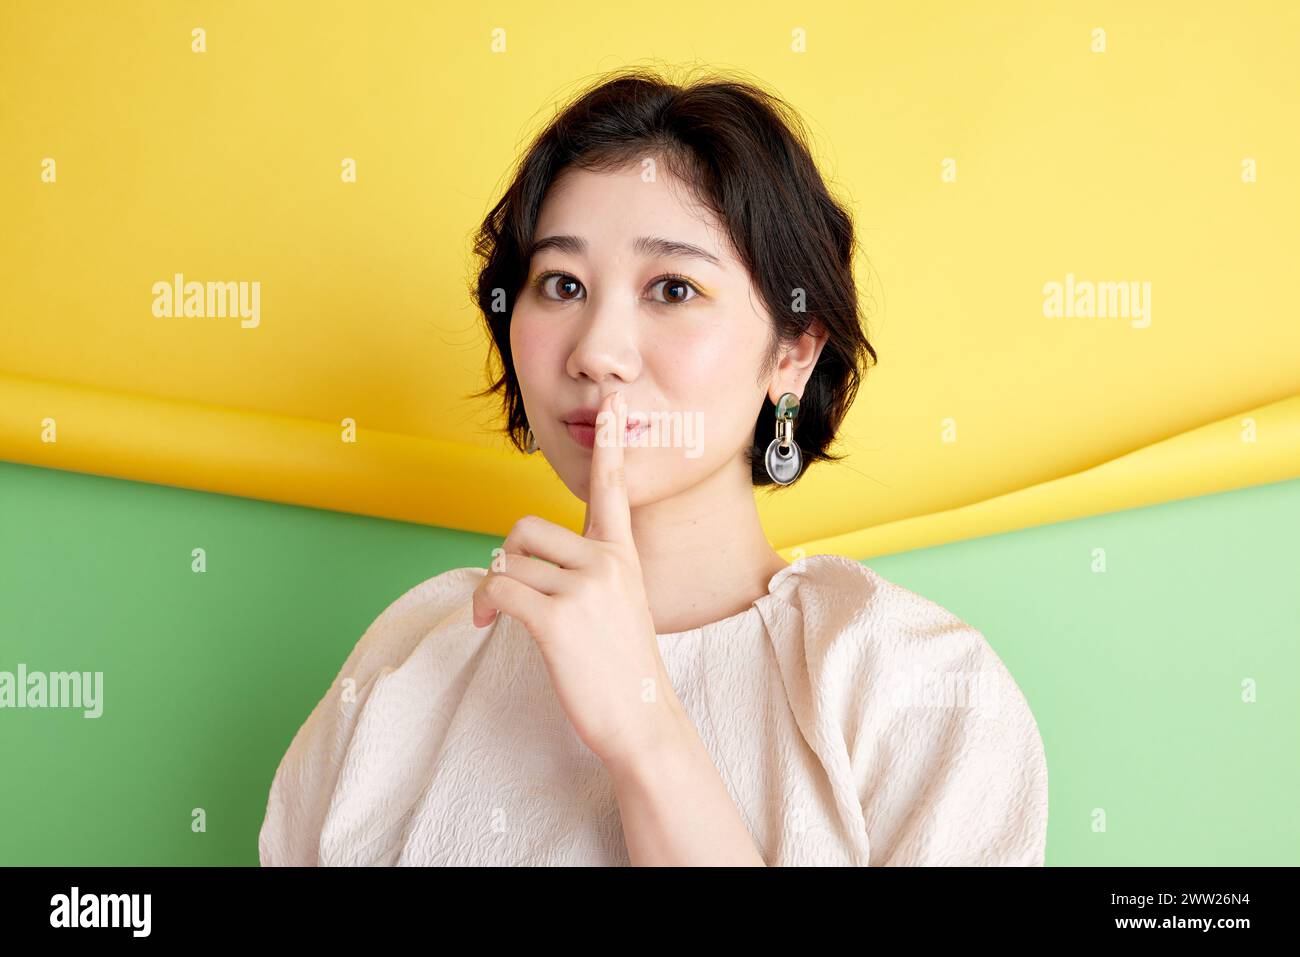 Femme asiatique avec le doigt sur les lèvres sur fond jaune et vert Banque D'Images